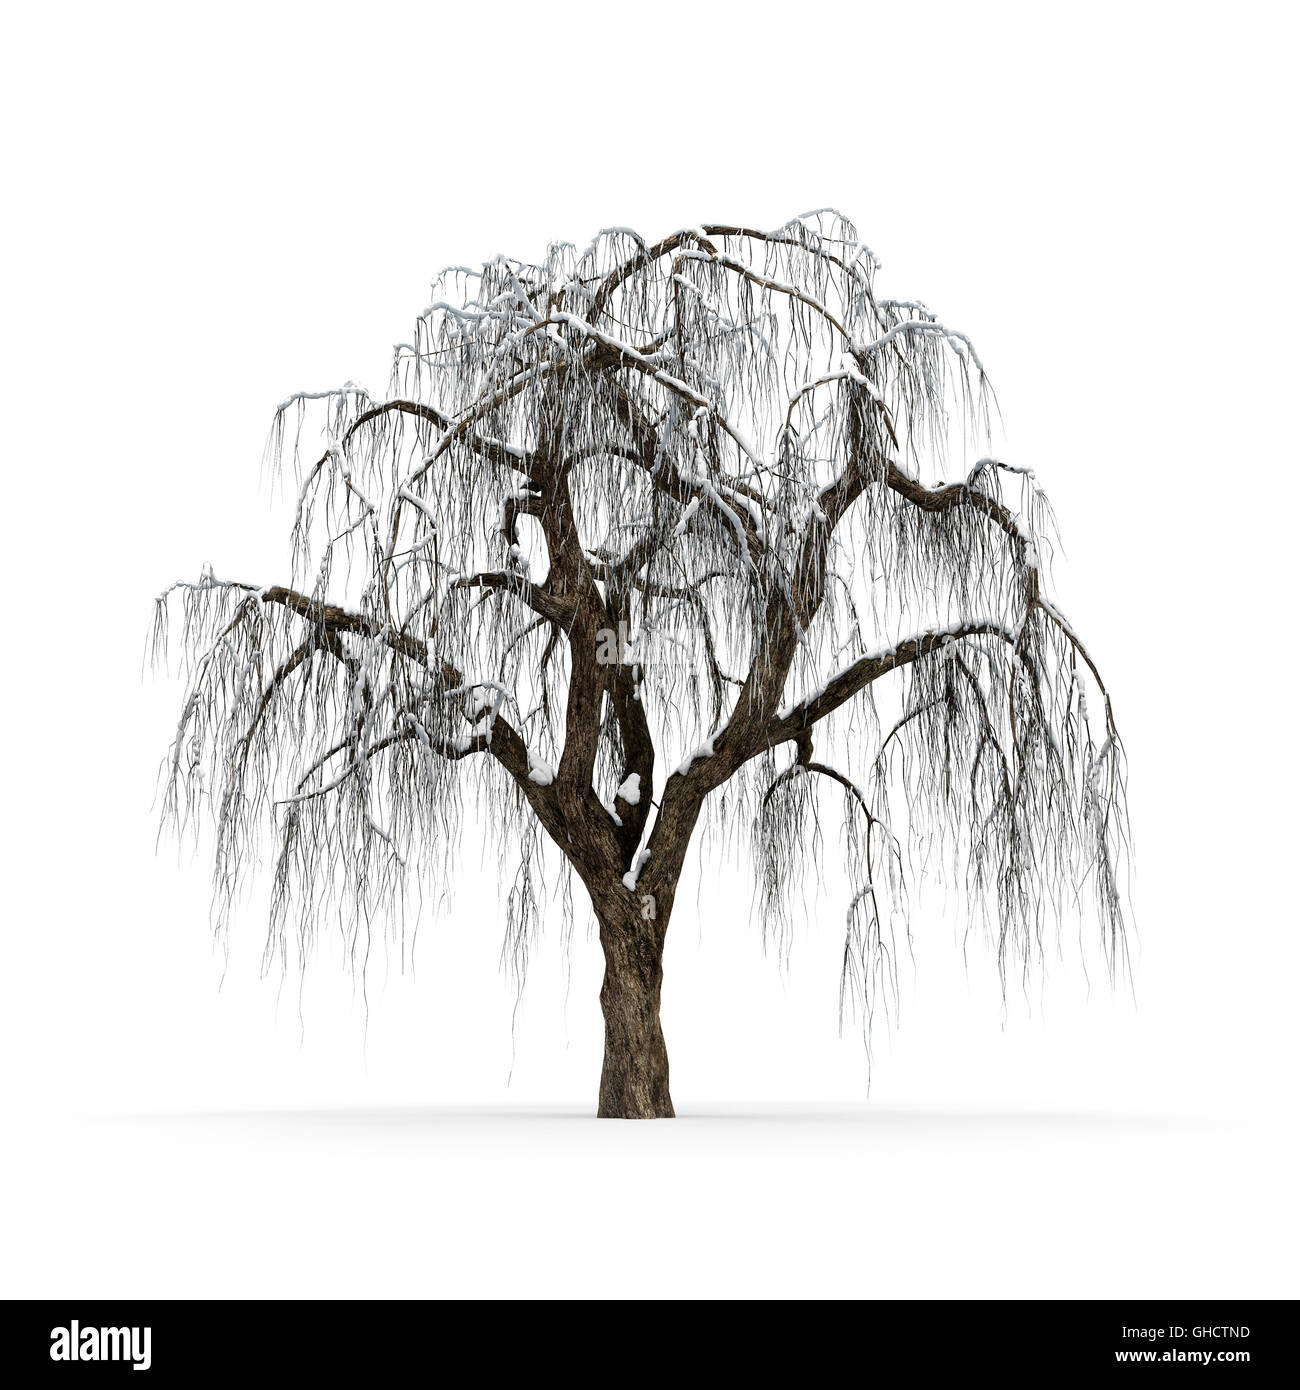 Winter Baum ohne Blätter auf weißem Hintergrund 3D-Rendering Stockfoto